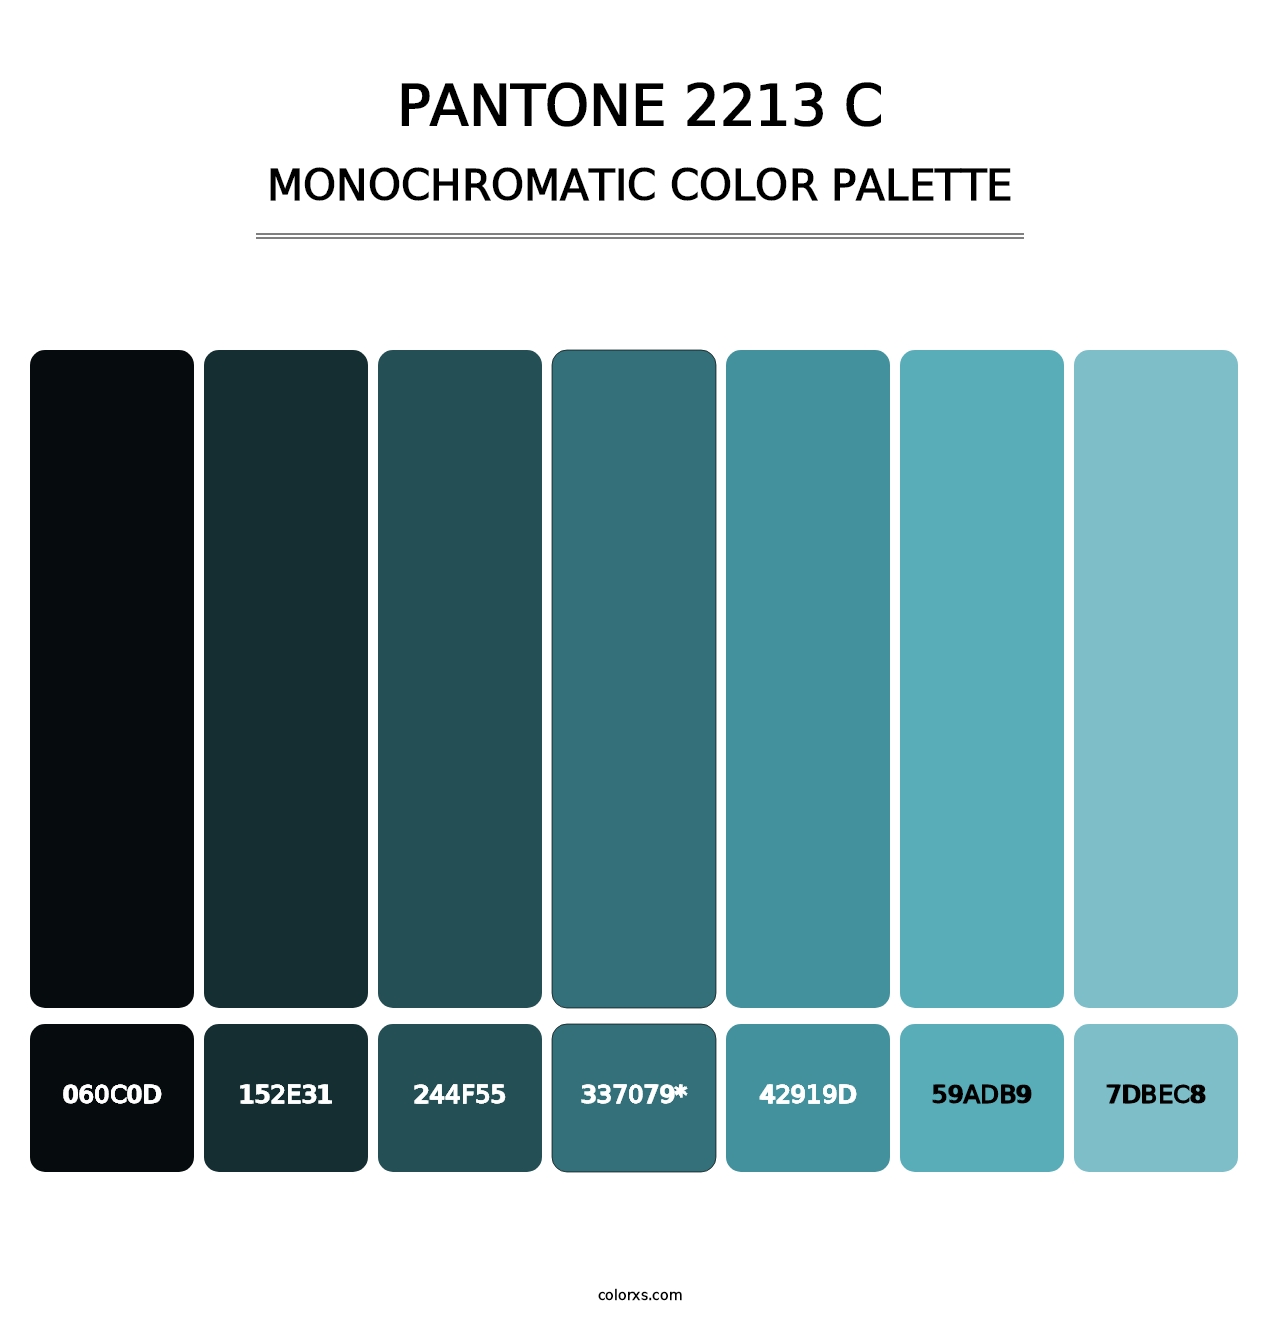 PANTONE 2213 C - Monochromatic Color Palette